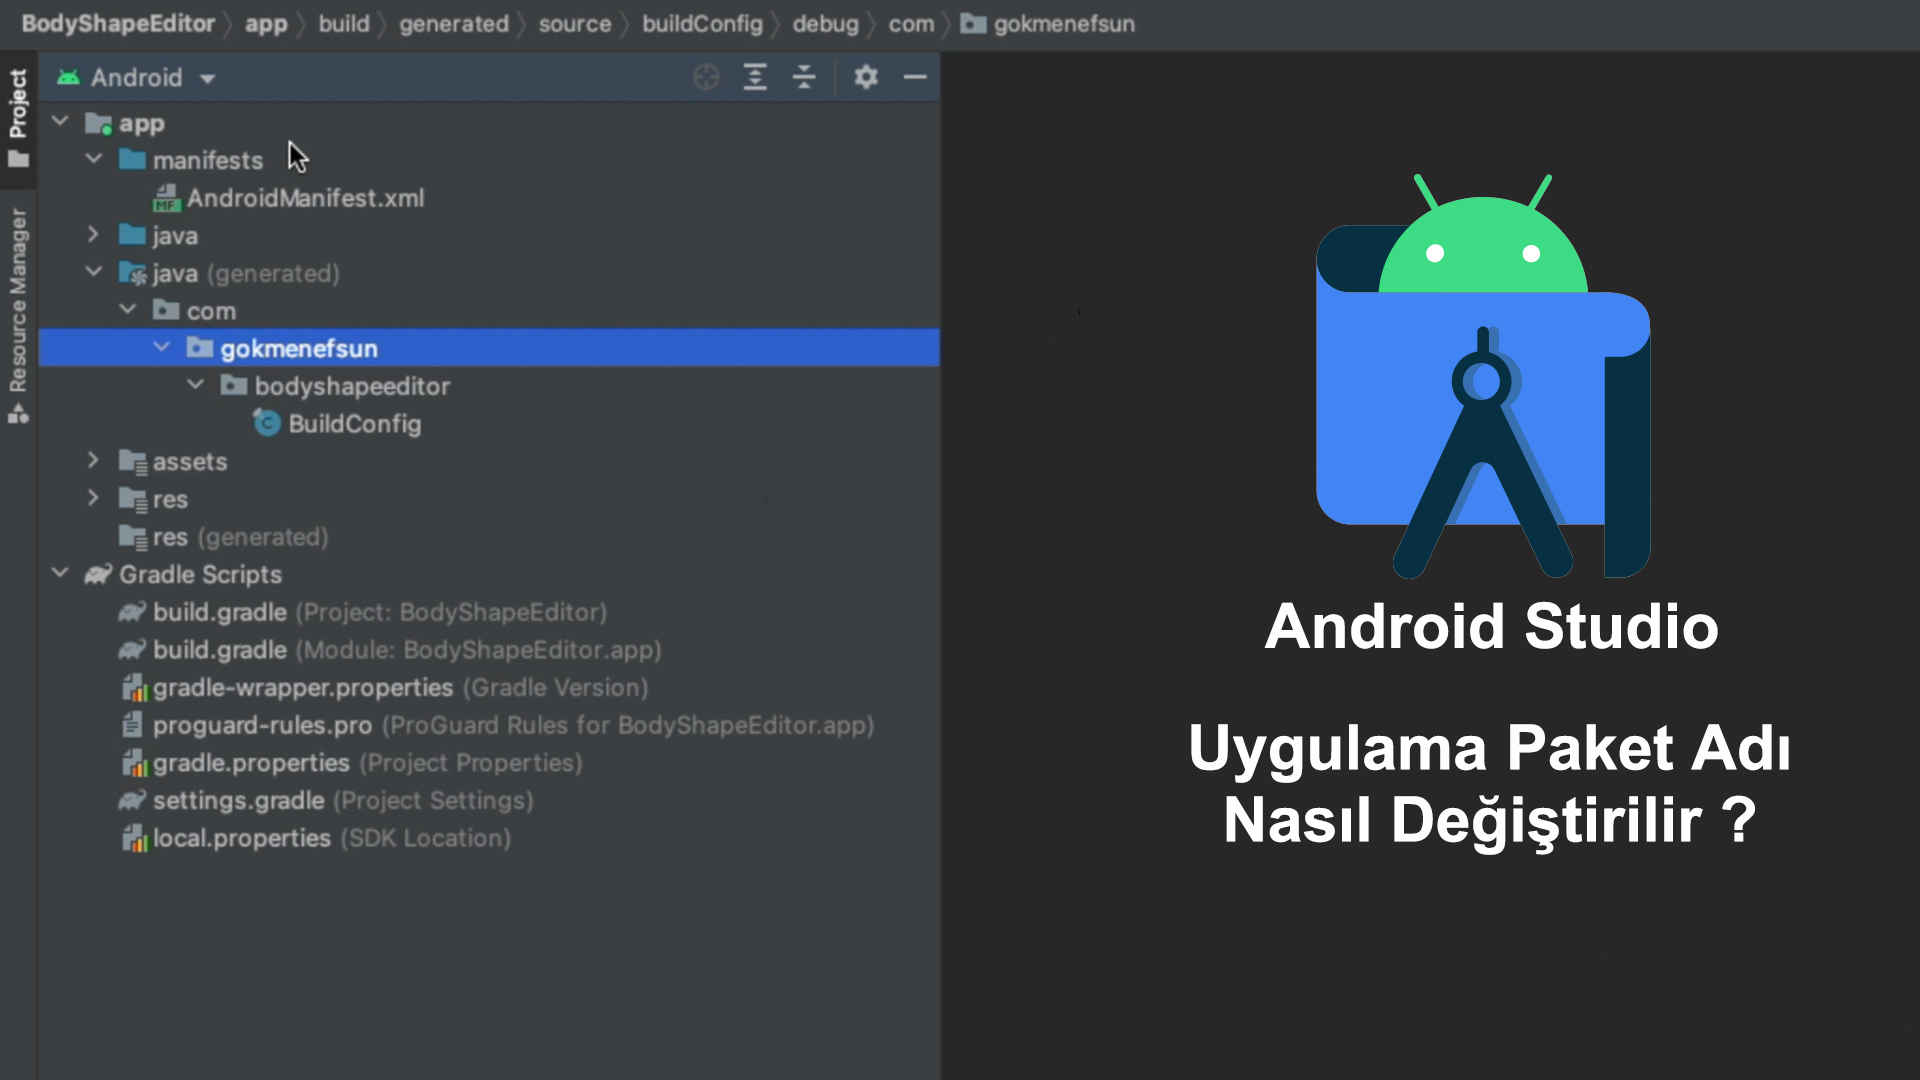 Android Studio Uygulama Paket Adı Nasıl Değiştirilir ?